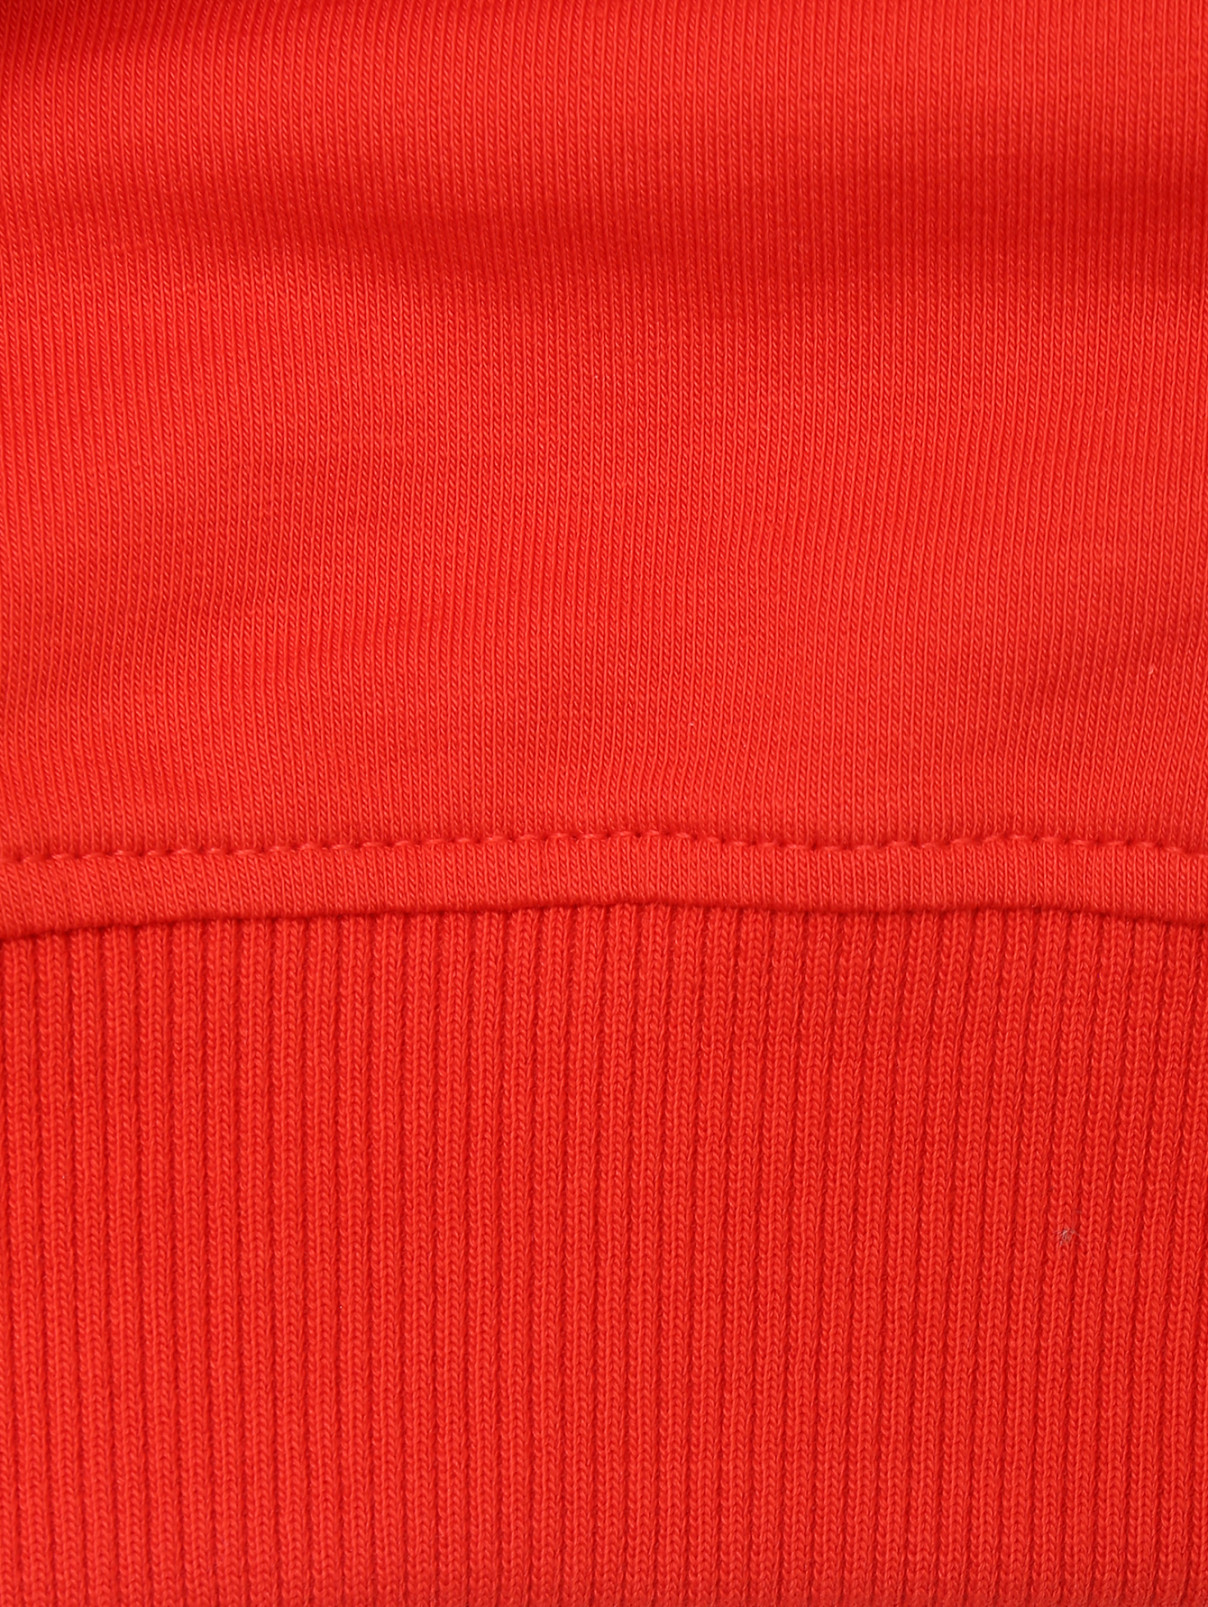 Толстовка с капюшоном и принтом Moschino  –  Деталь  – Цвет:  Красный